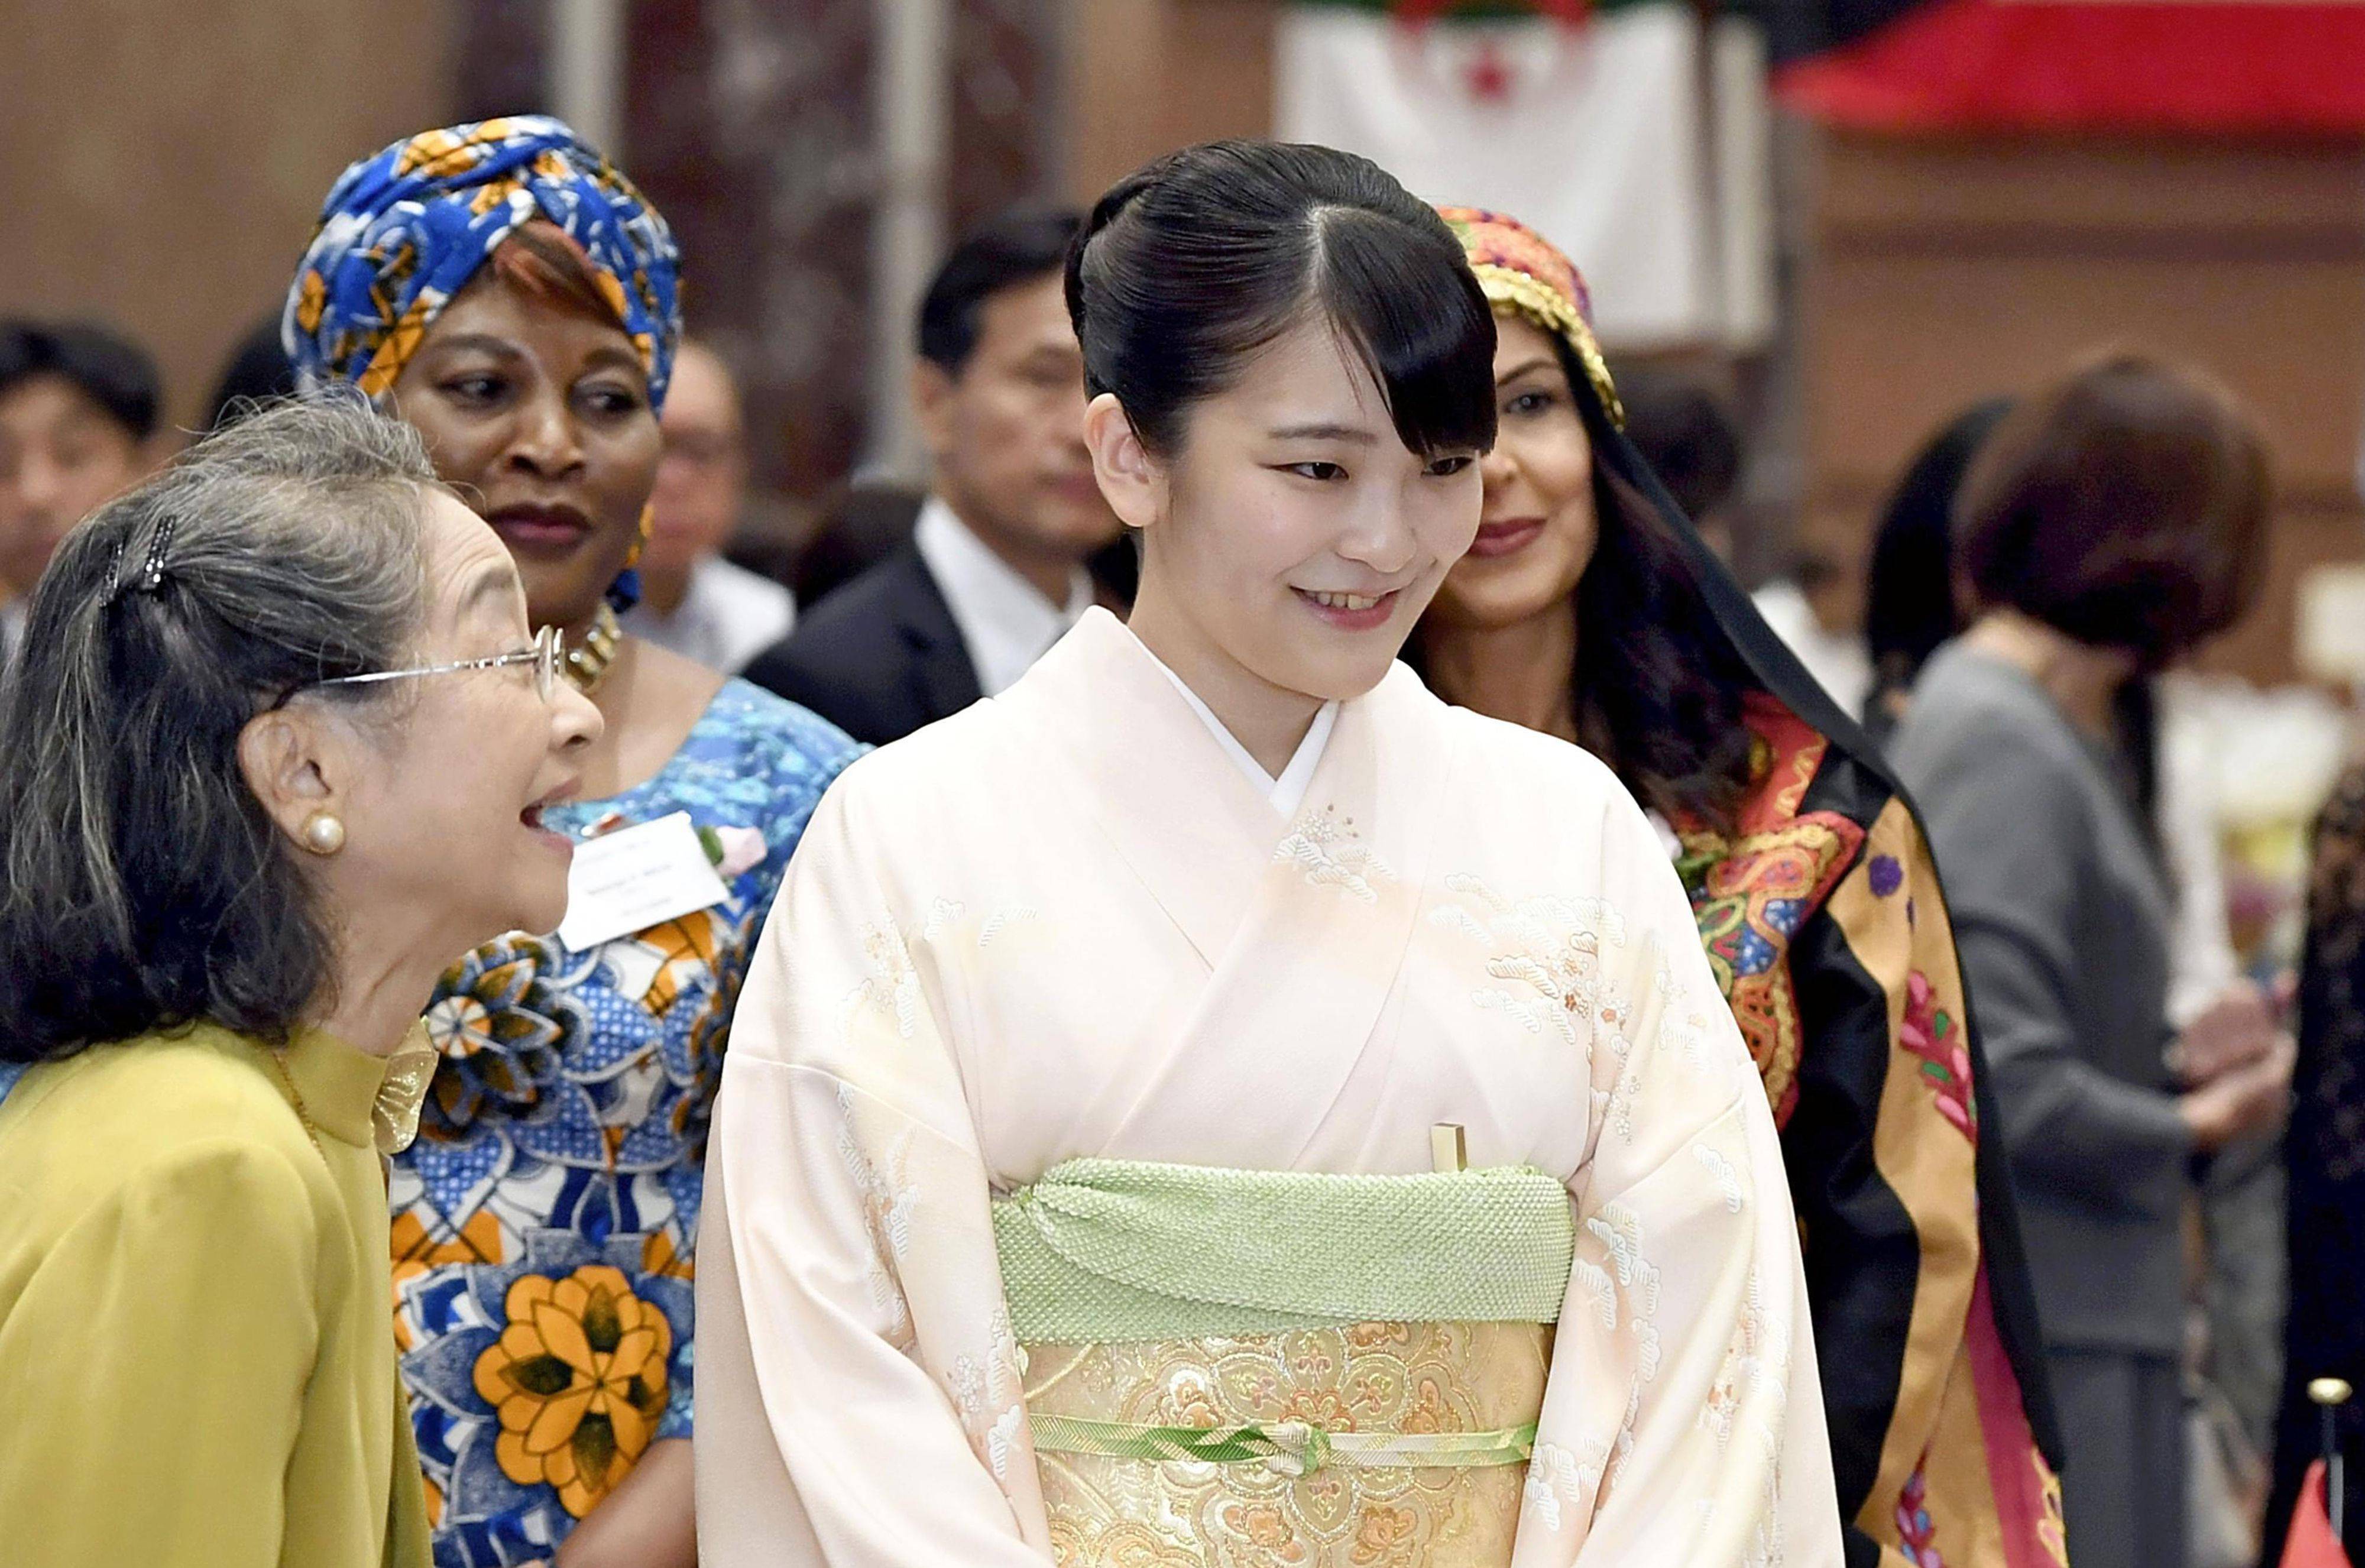 不举办婚礼,放弃一亿日元补助,日本真子公主远嫁美国被爆将在画廊上班